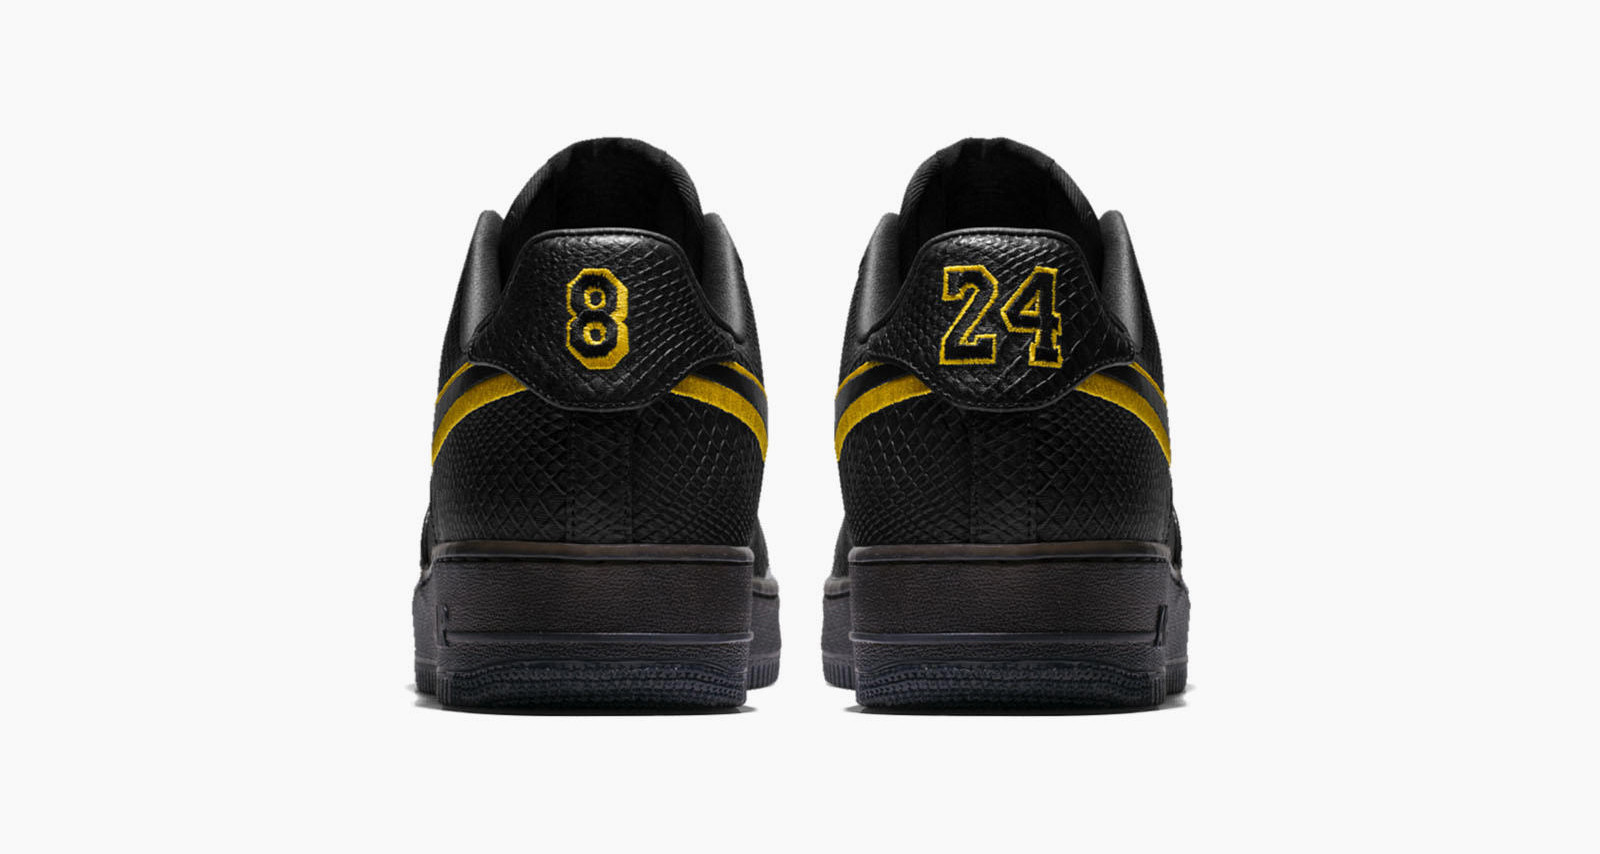 cooper nike air force hi black boots kids size 3 Premium iD "Kobe"